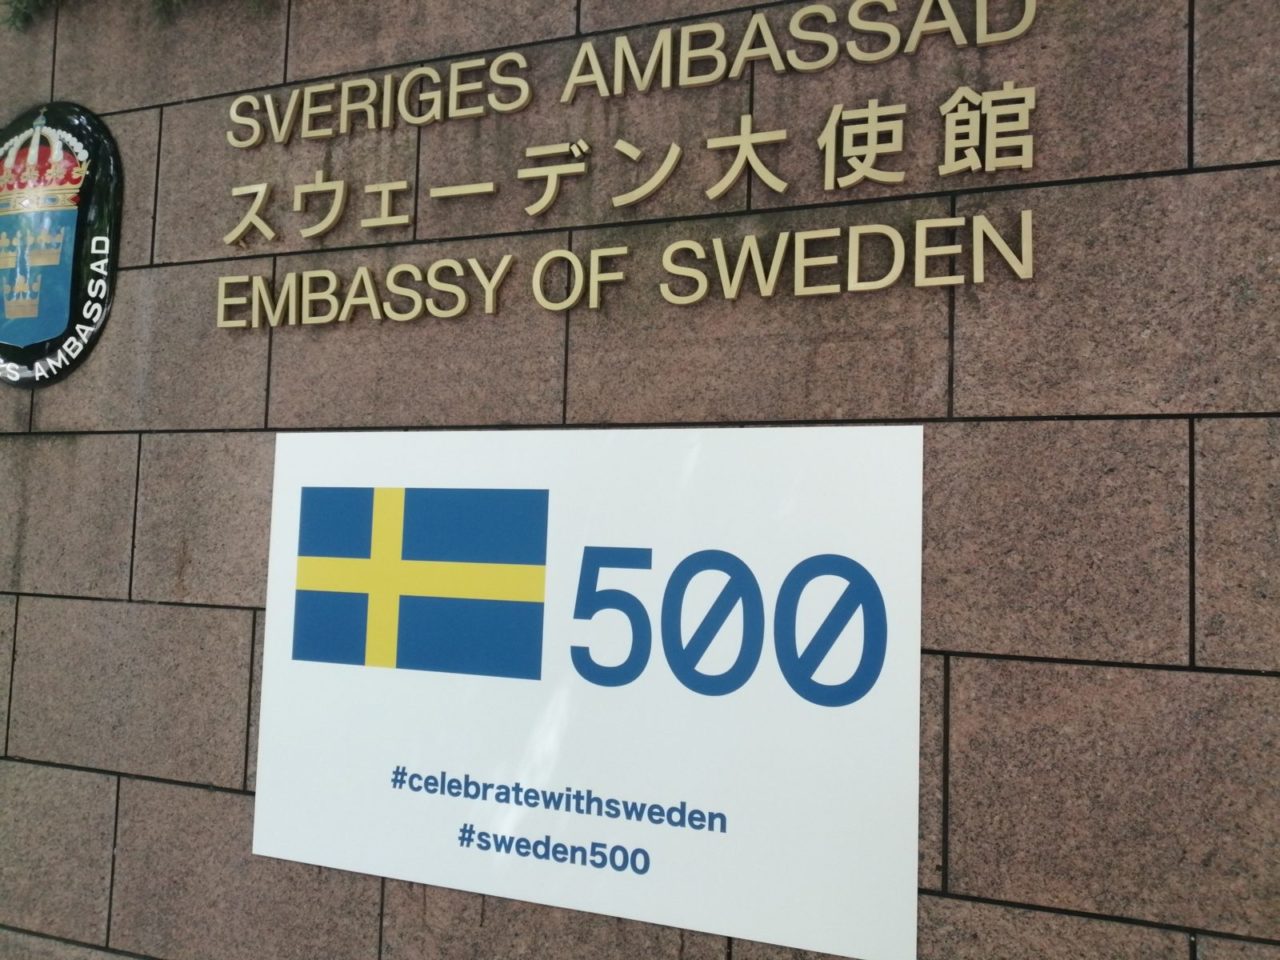 ススウェーデン建国500年・国王即位50周年記念 スウェーデンのナショナルデーの画像